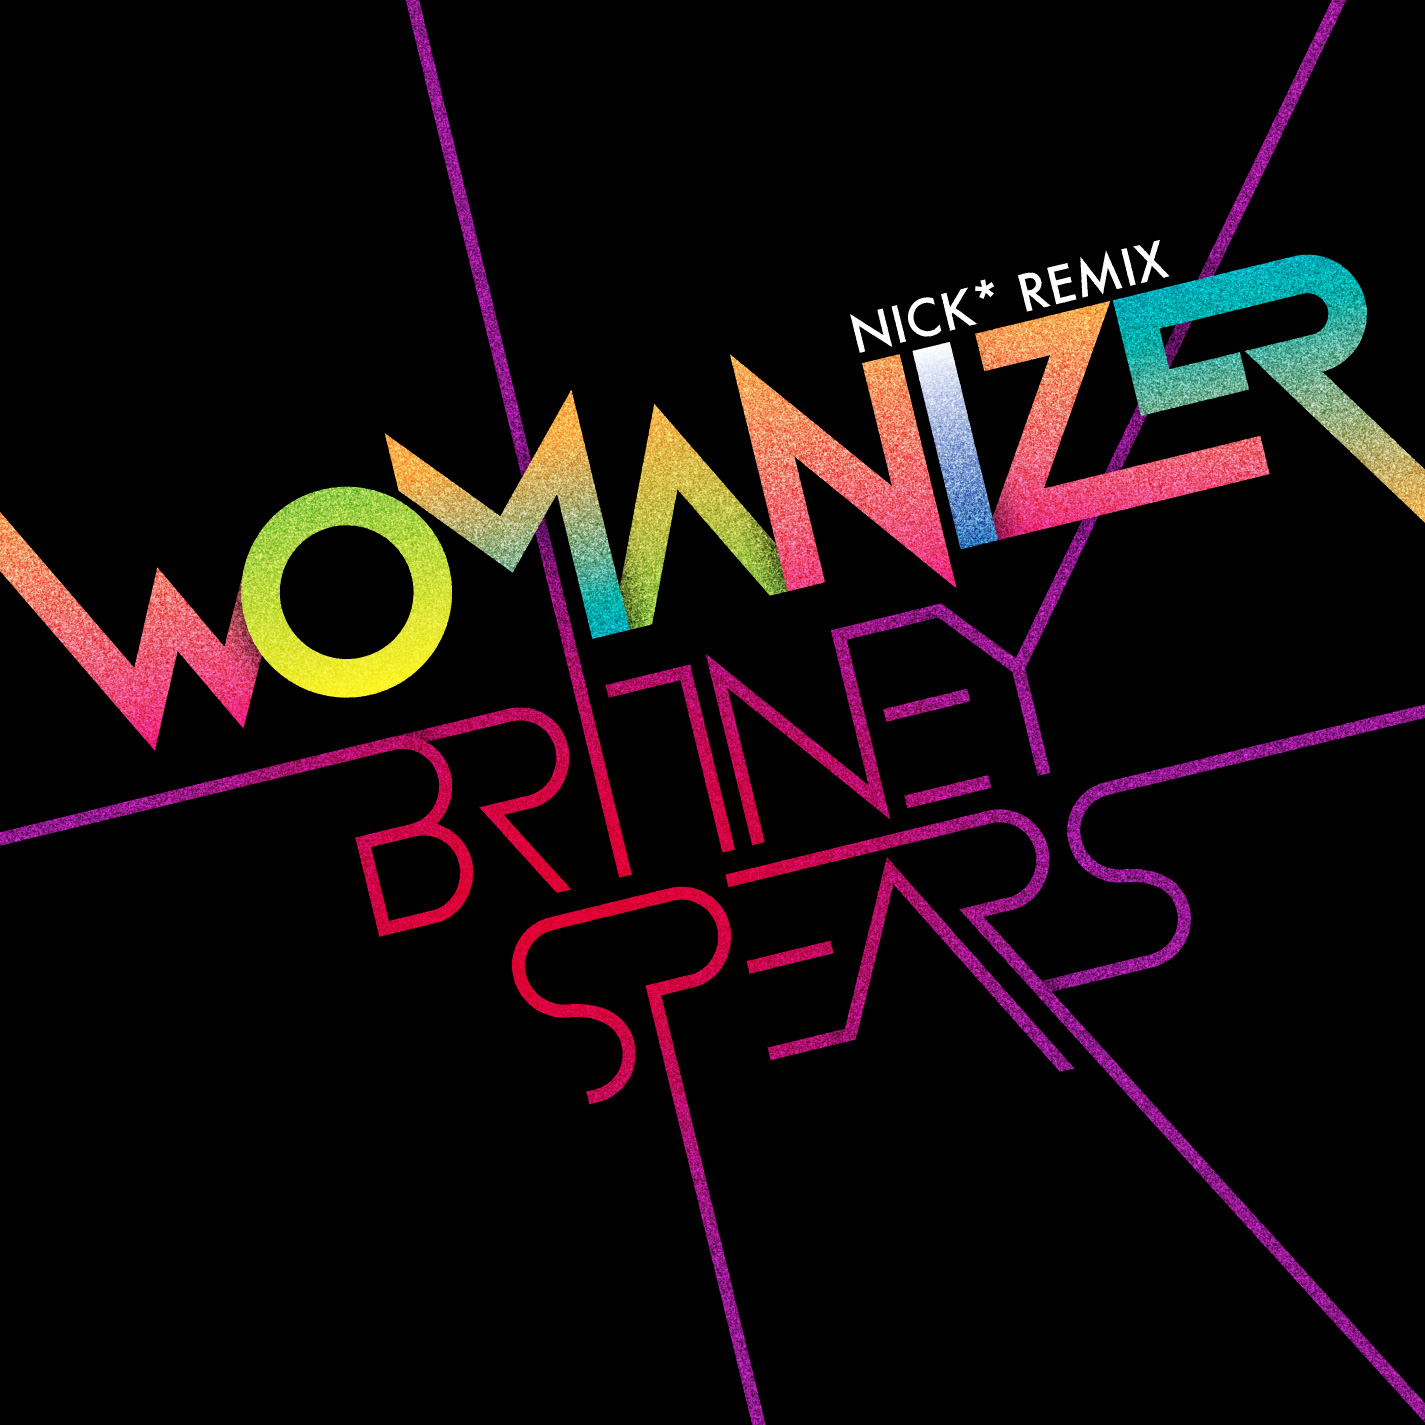 Britney Spears - Womanizer Nick* Remix